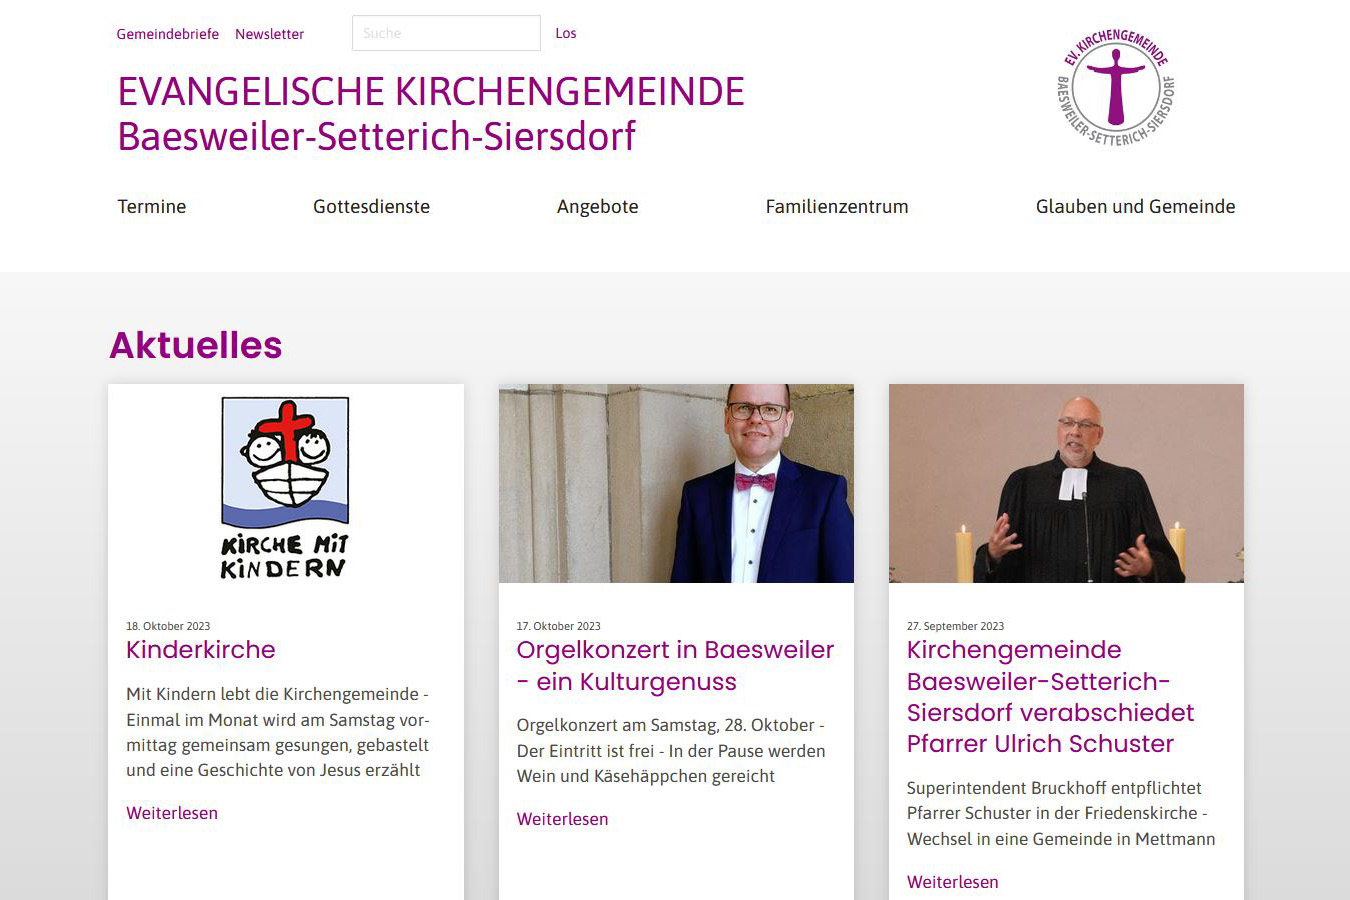 Aufgeräumt und mit klarem Fokus auf aktuelle Themen: So präsentiert sich die Kirchengemeinde Baesweiler-Setterich-Siersdorf im Internet.